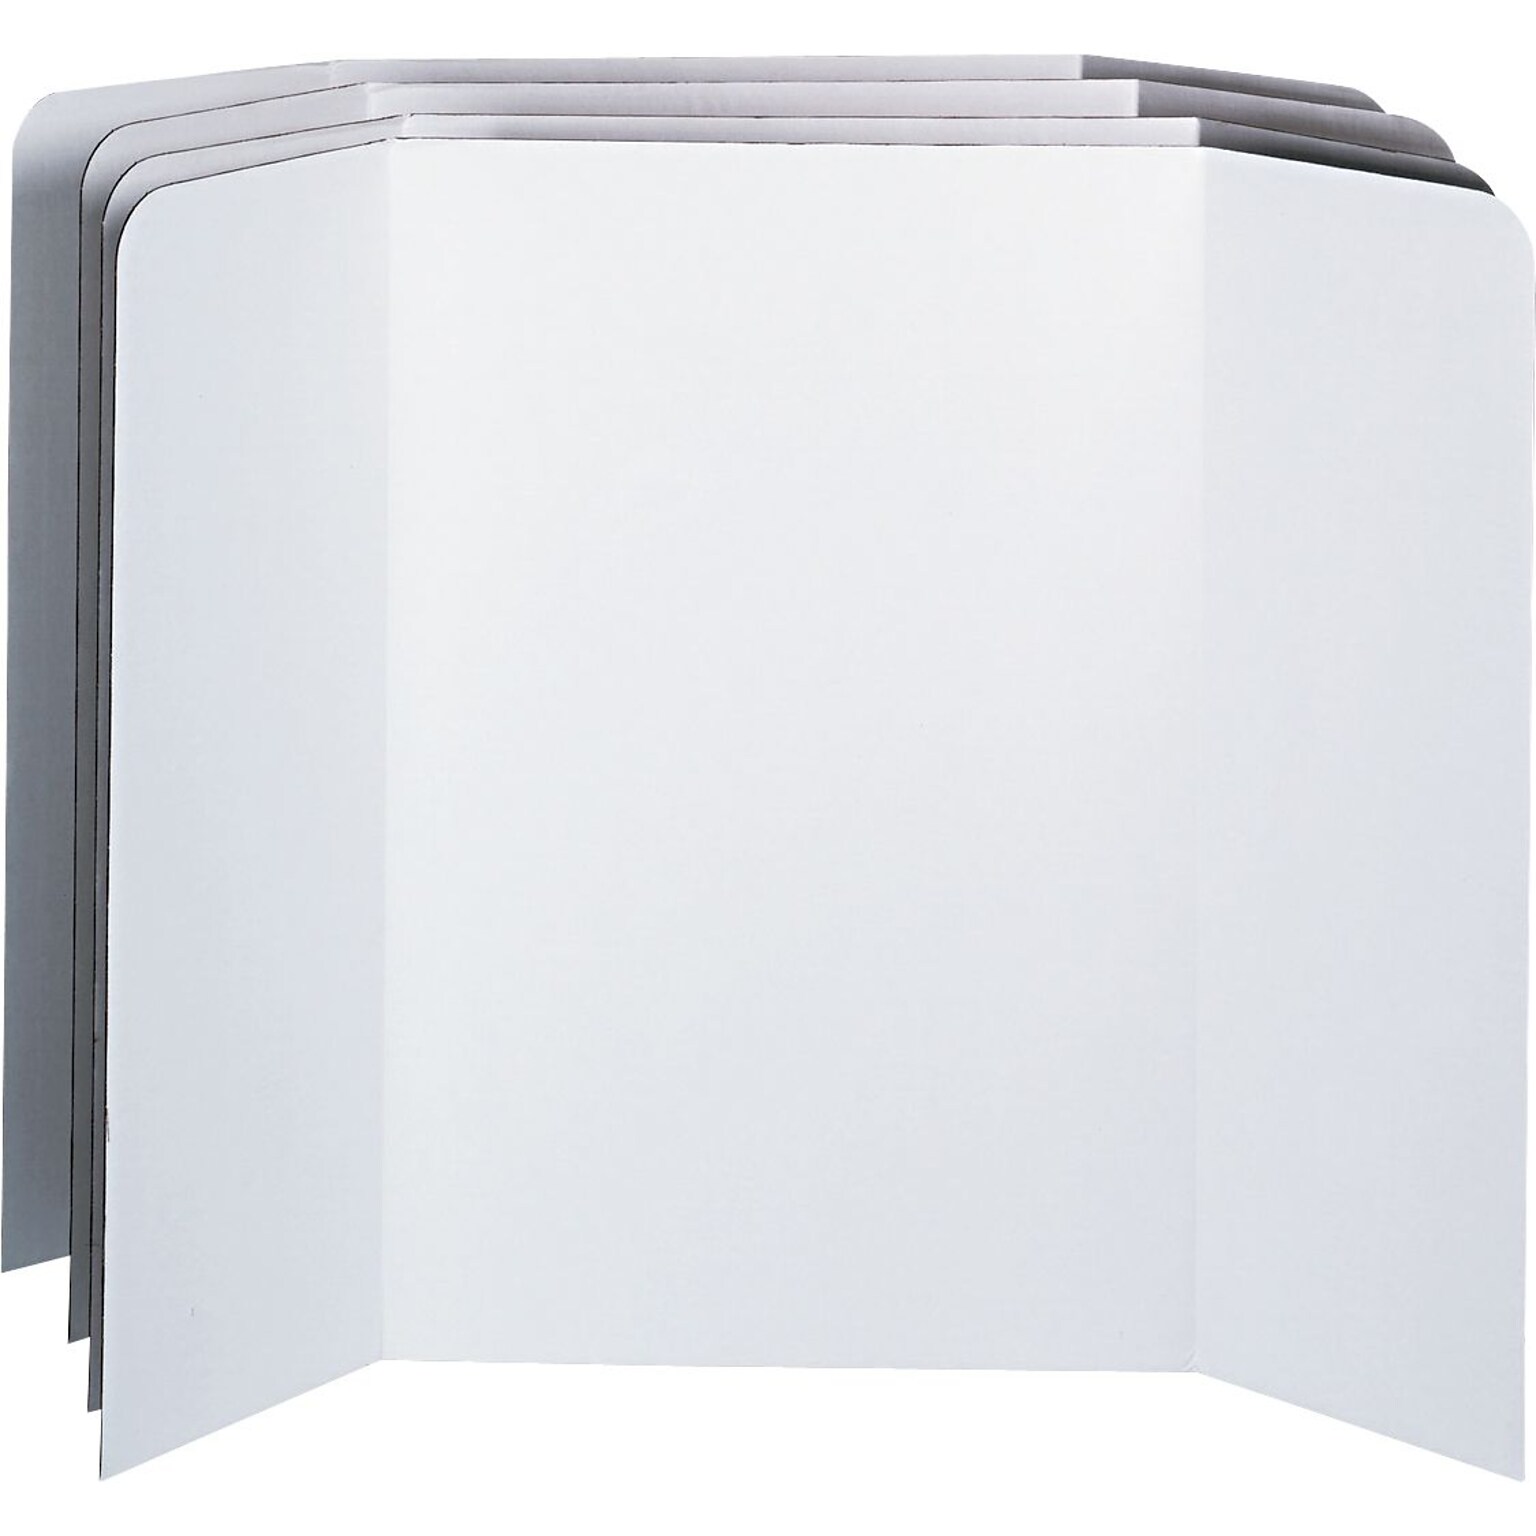 Pacon Spotlight™ Presentation Boards, White Boards, 48 x 36, 4/Ct